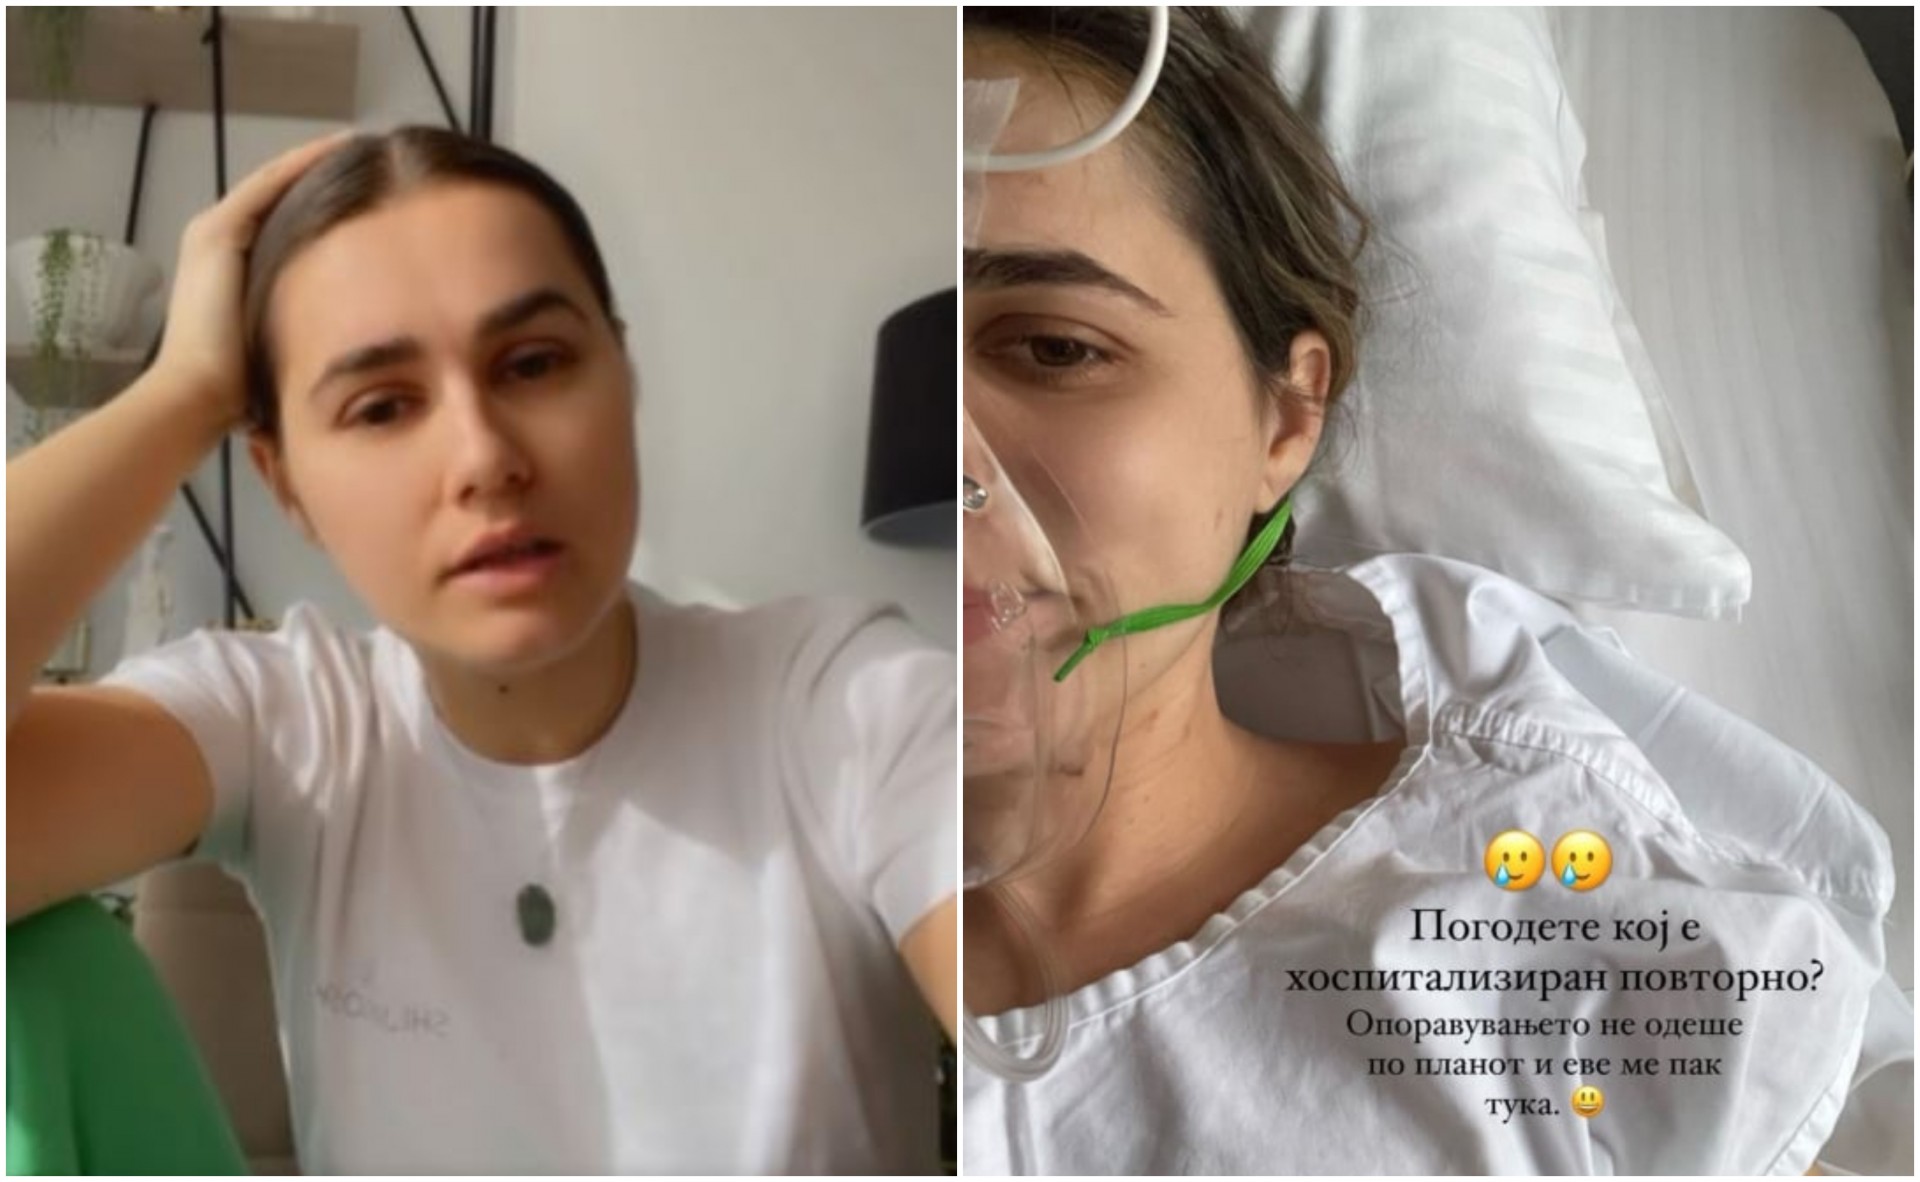 Опоравувањето не одеше по планот: Александра Шијакоска повторно хоспитализирана (ФОТО)